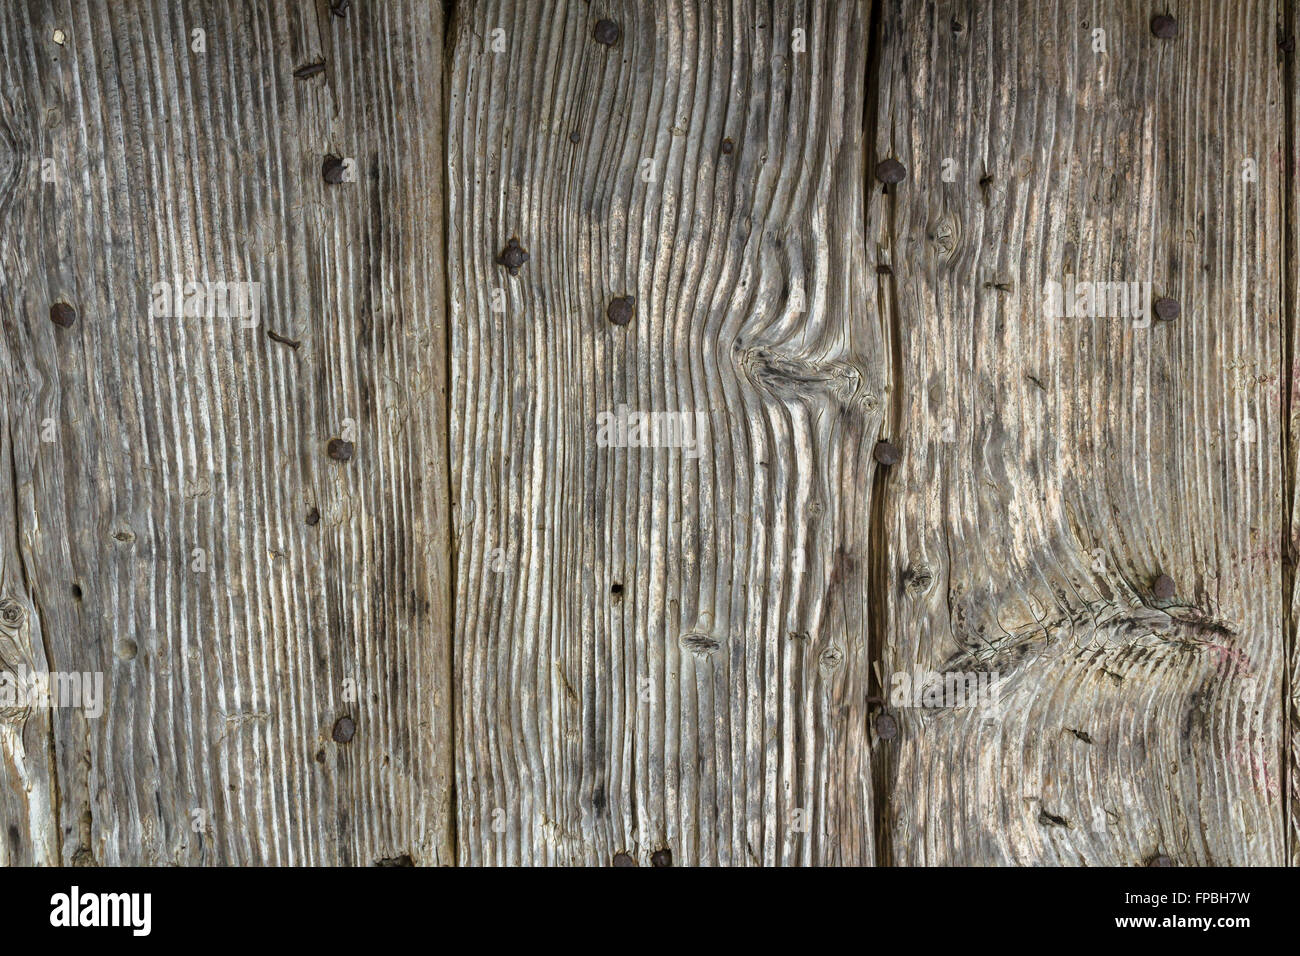 Vintage wood texture background avec couleurs fanées. Pour votre texte ou photo, rétro fond de bois. Banque D'Images